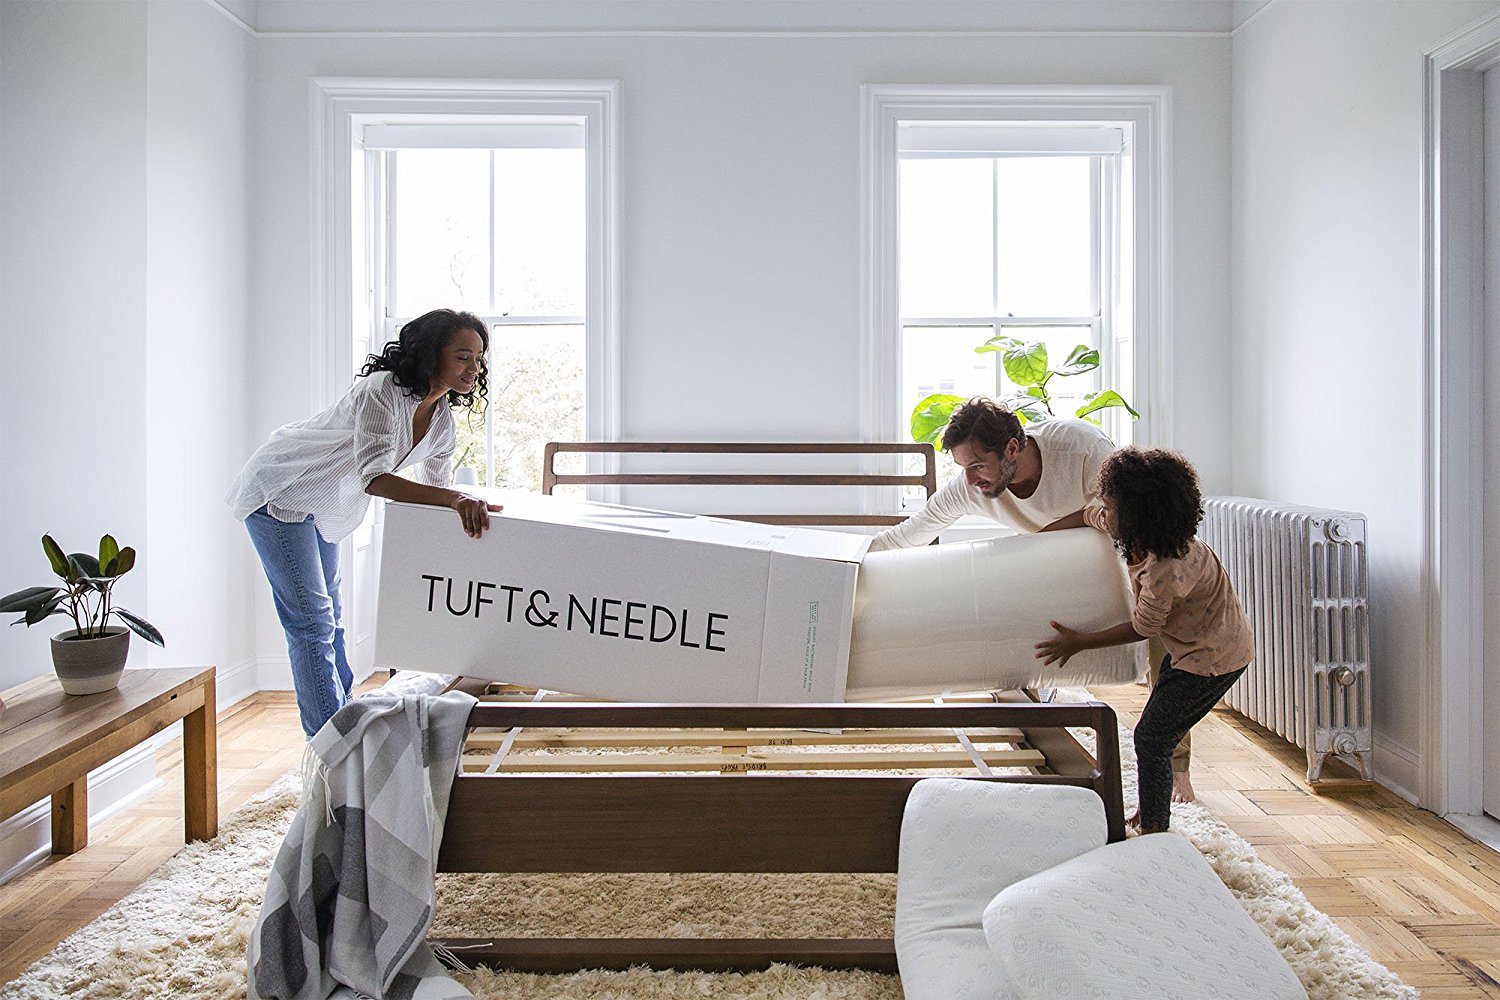 Tuft & Needle Mattress